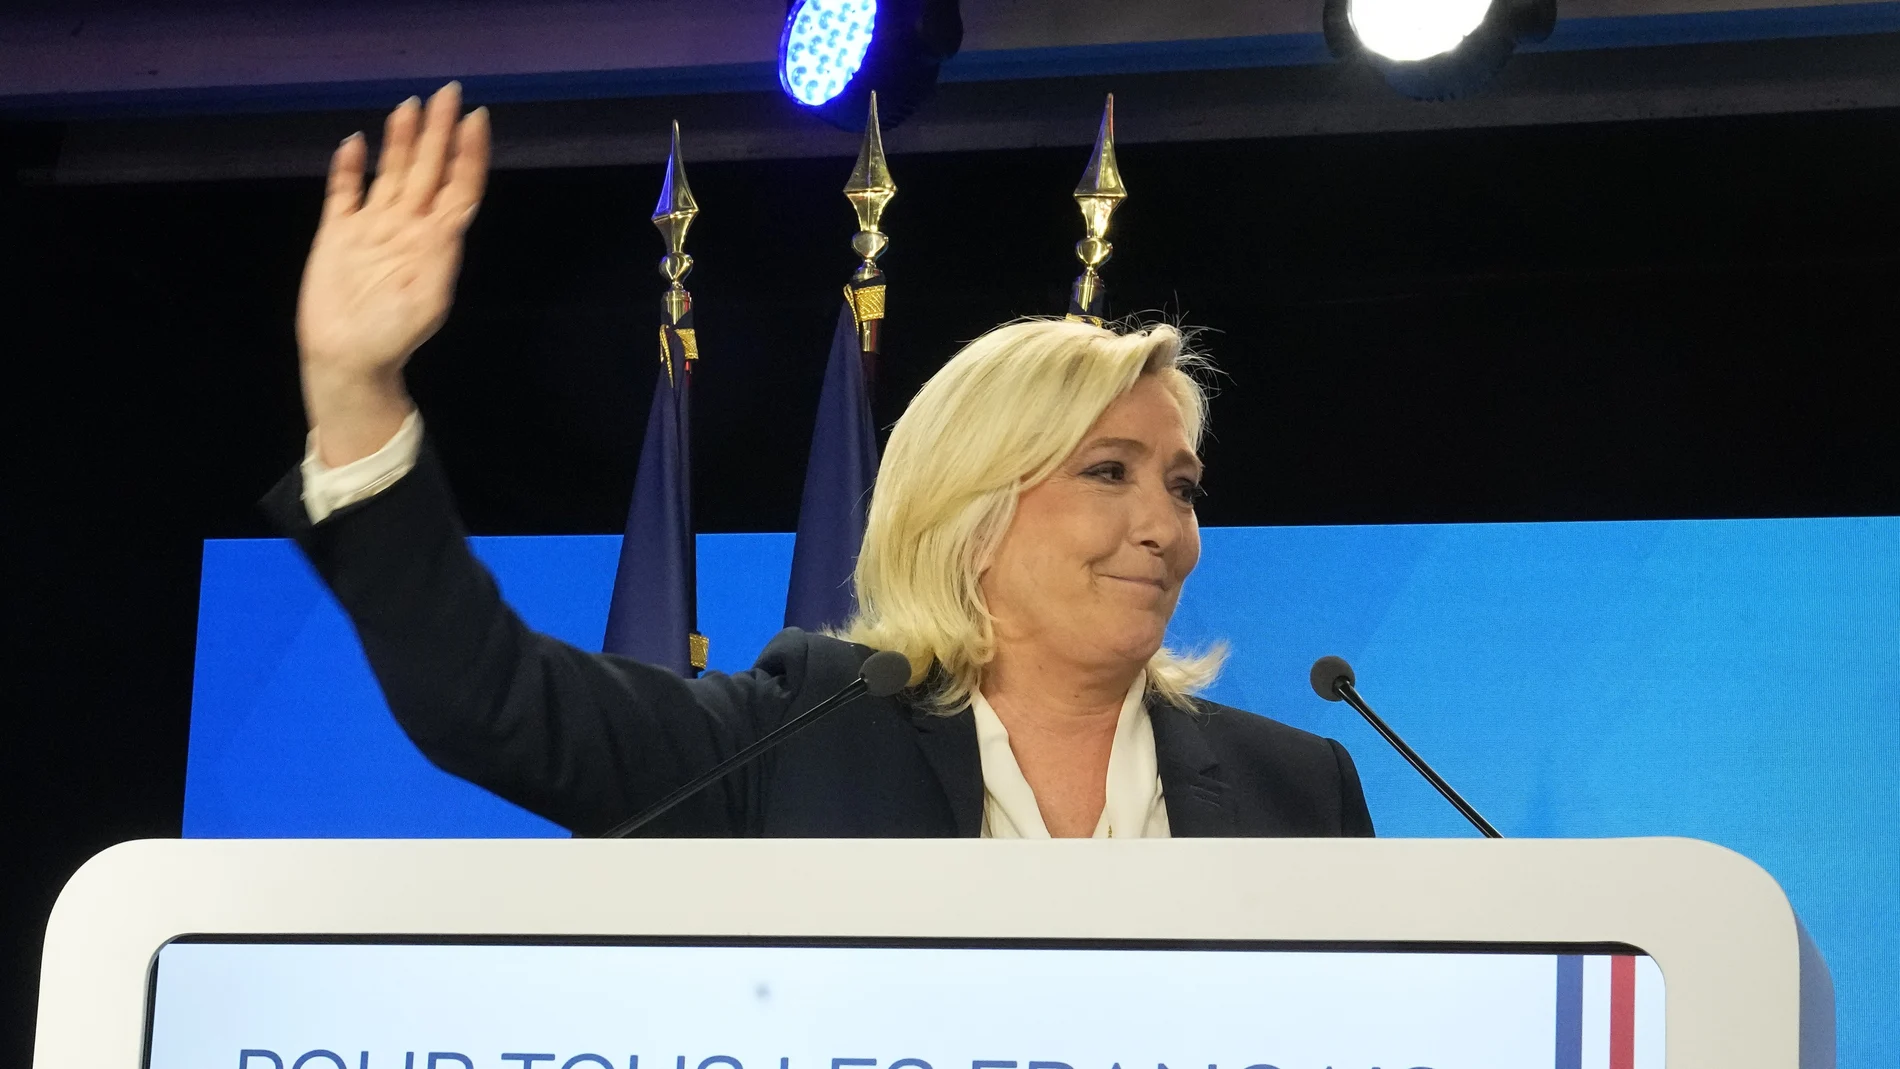 La líder ultraderechista, Marine Le Pen